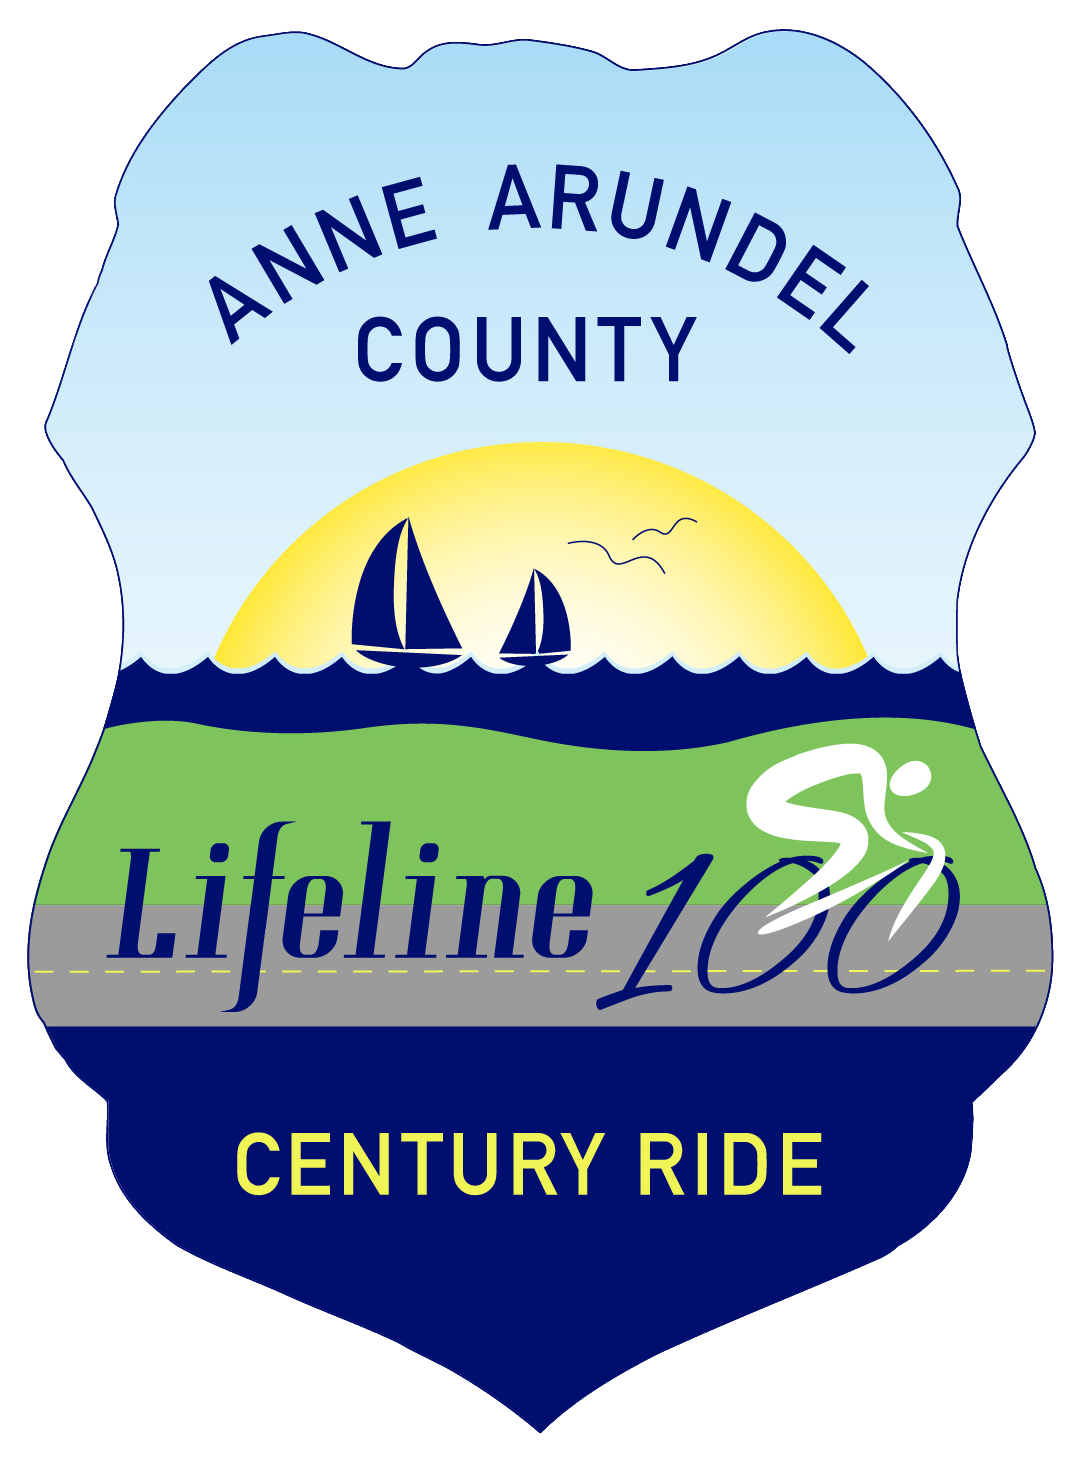 2019 Anne Arundel County Lifeline 100 Century Ride - 2019 Anne Arundel County Lifeline 100 Century Ride (1179x1558)